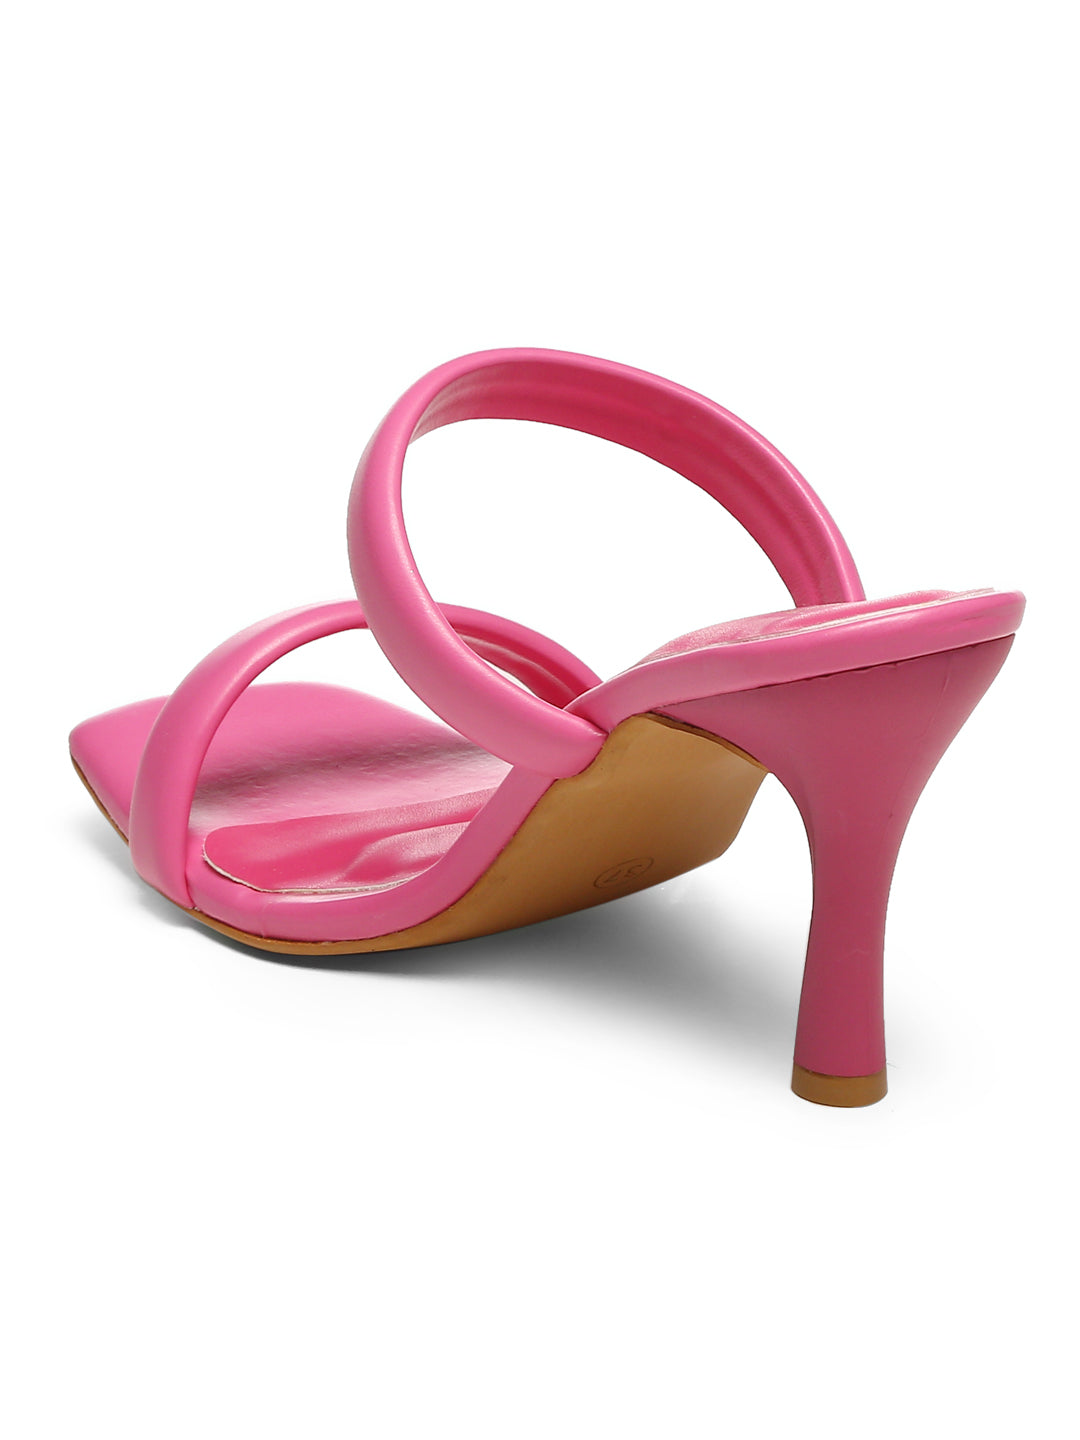 GNIST Hot Pink Quilted Strap Stilettos Heel